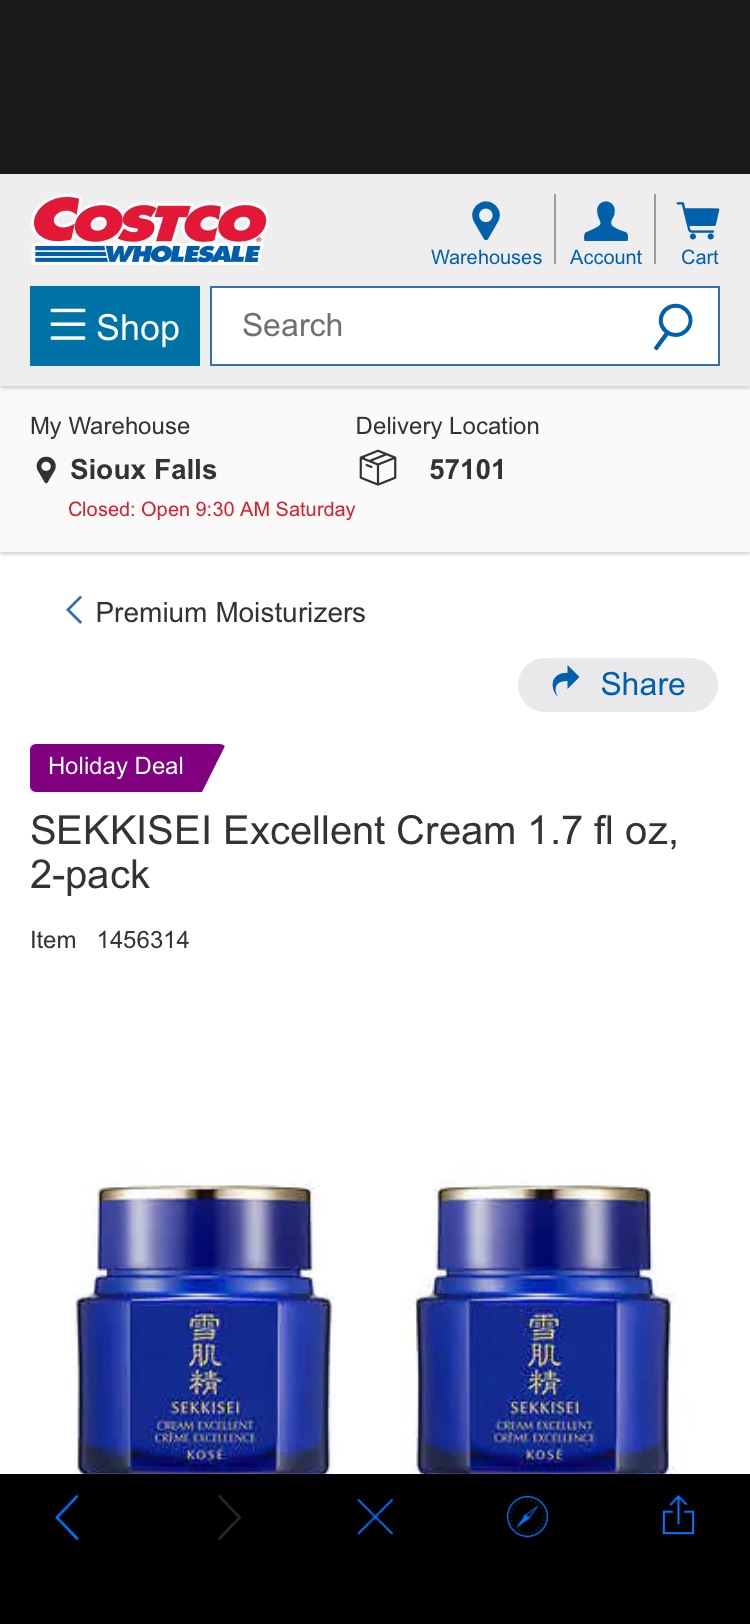 SEKKISEI Excellent Cream 1.7 fl oz, 2-pack | Costco